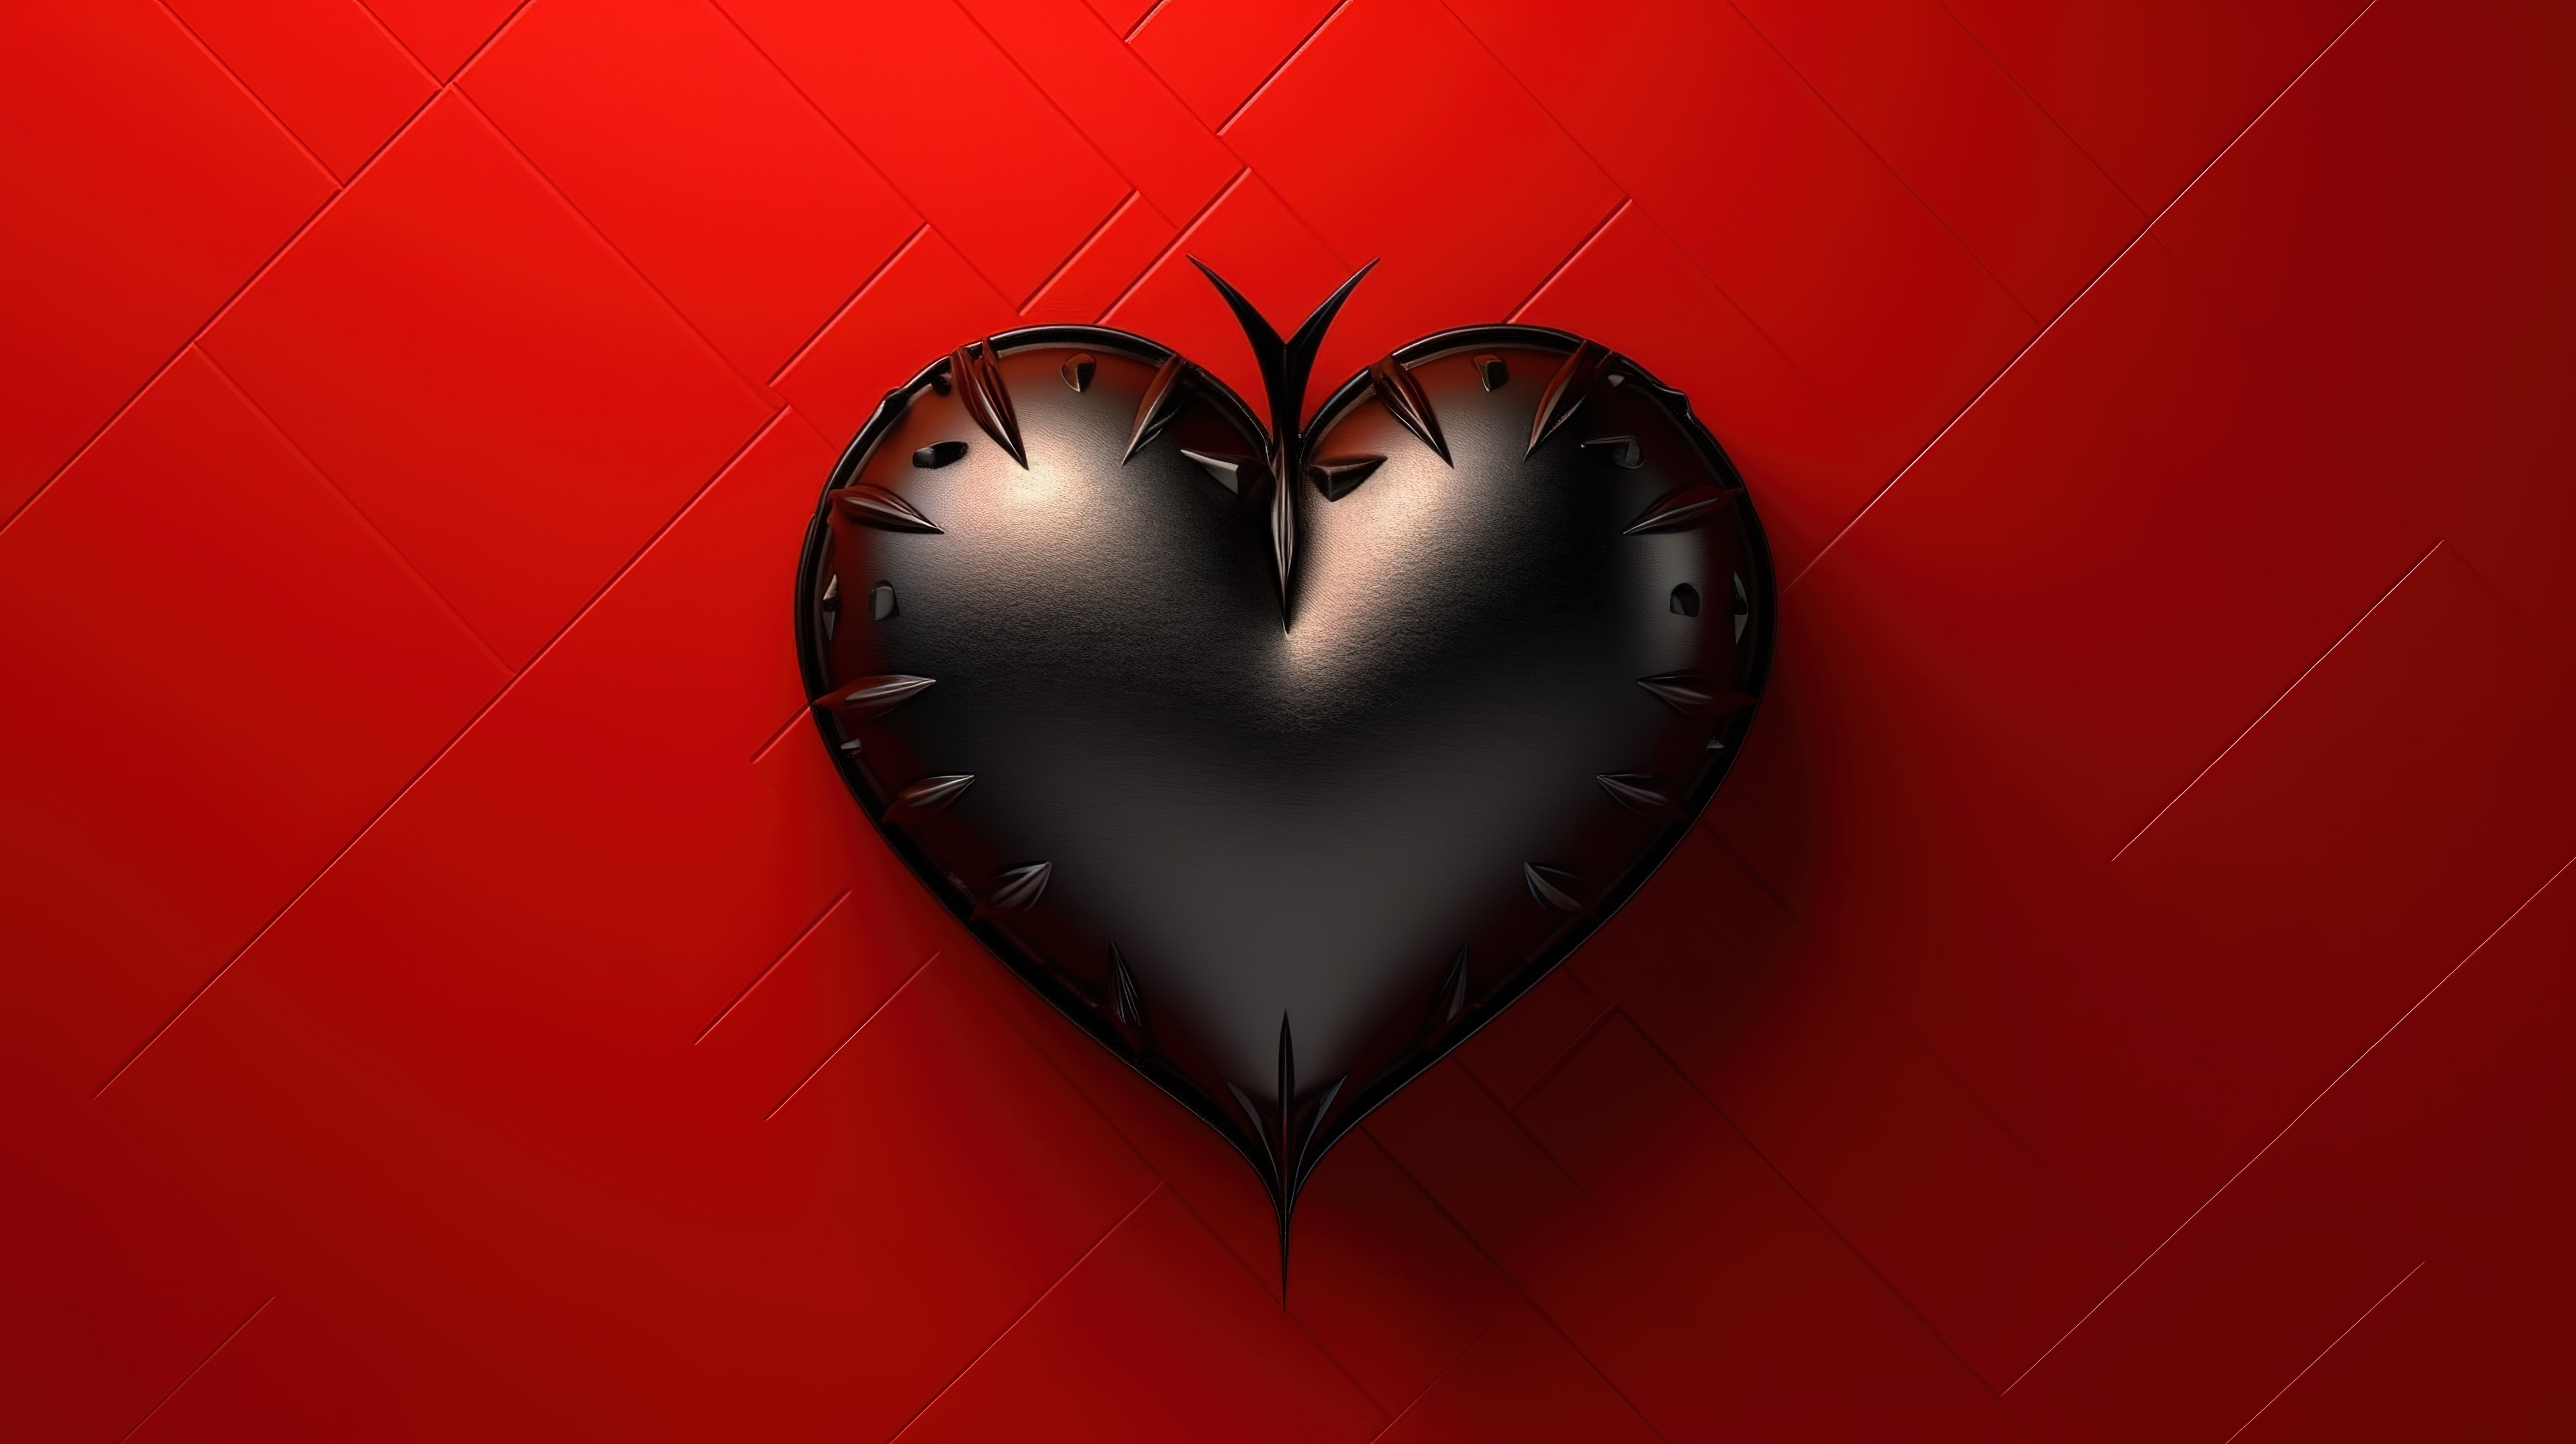 深红色背景下的黑暗心脏象征着 3D 呈现的令人沮丧的情人节图片